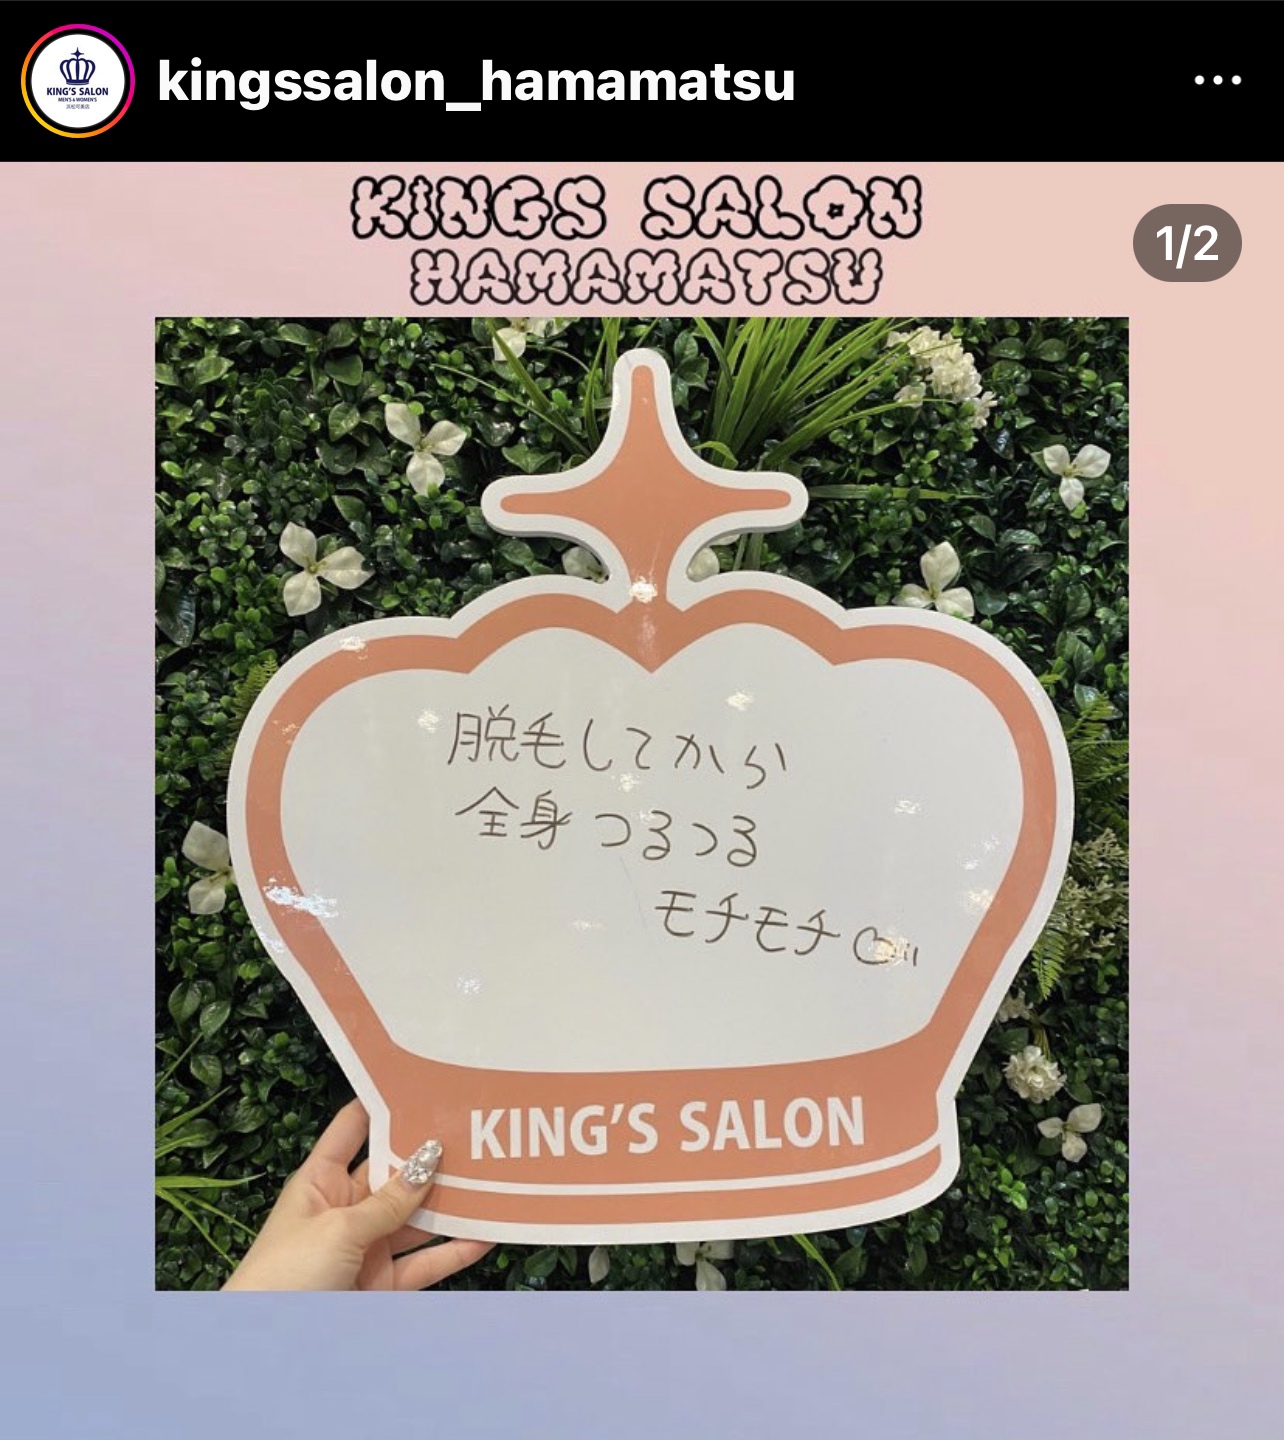 キングスサロンMEGAドン・キホーテ浜松可美店 お客様の声 サムネイル画像